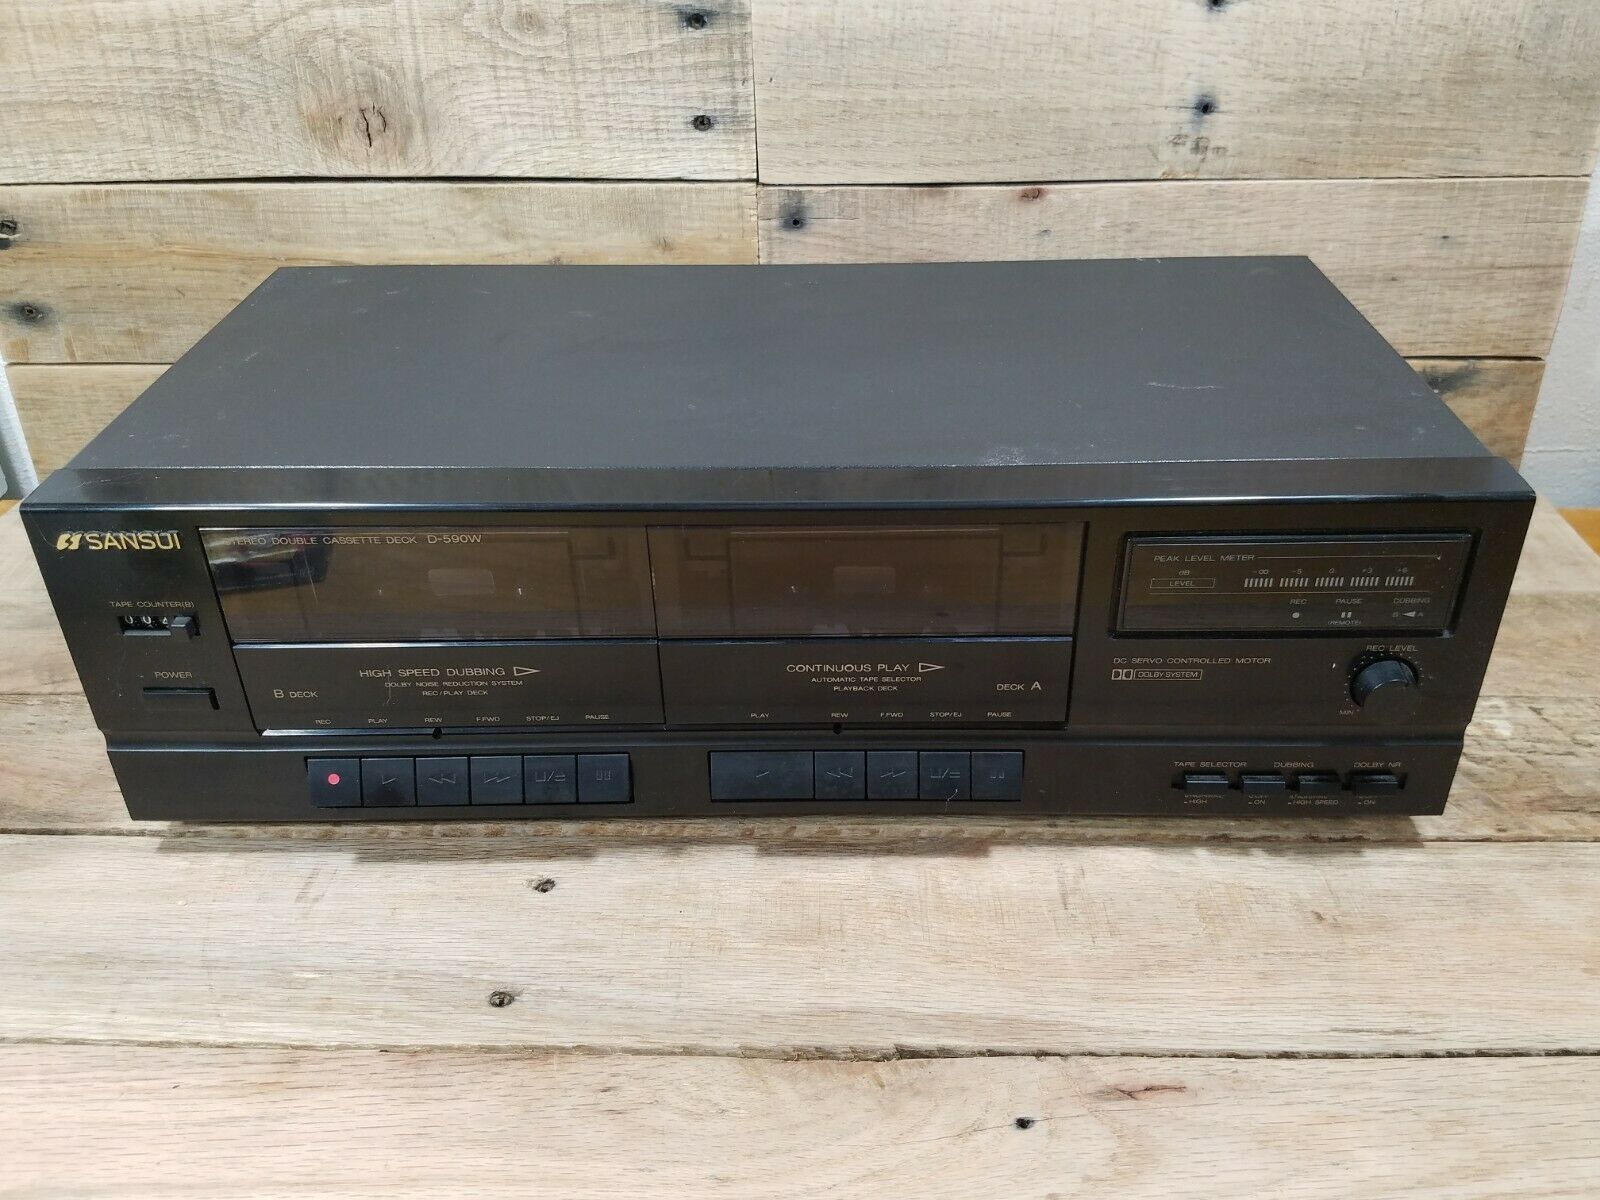 VINTAGE SANSUI Stereo Double Cassette Tape Deck Recorder Player D-590W - $94.00